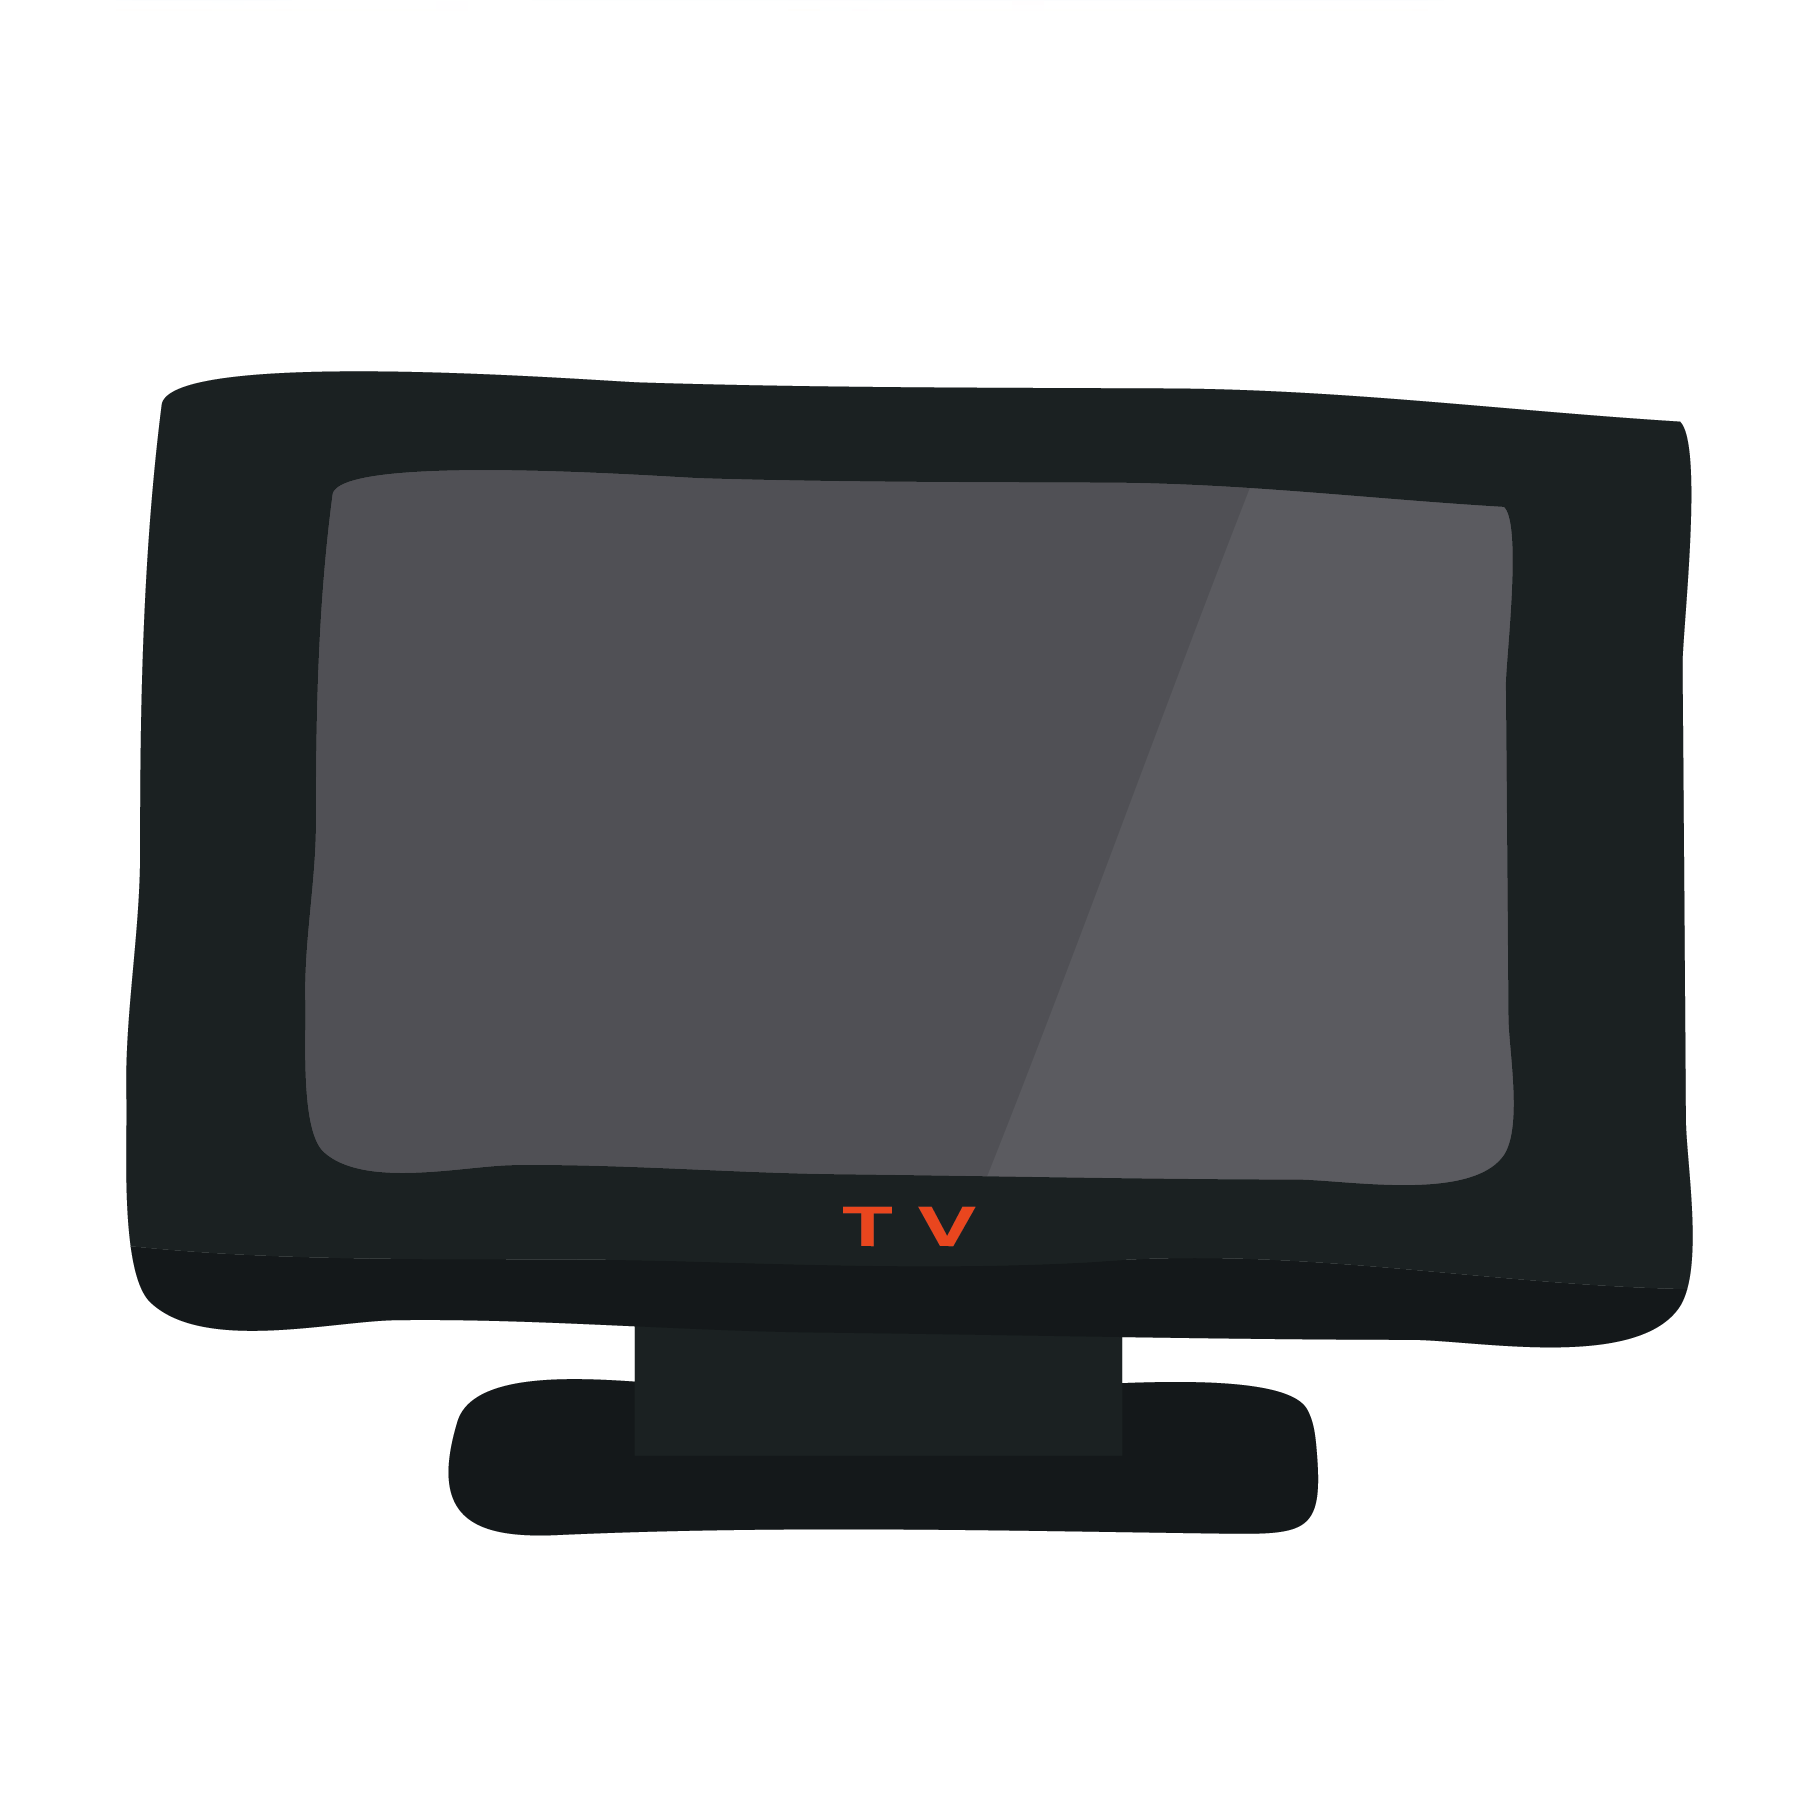 テレビ てれび Tv のイラスト 電化製品 商用フリー 無料 のイラスト素材なら イラストマンション